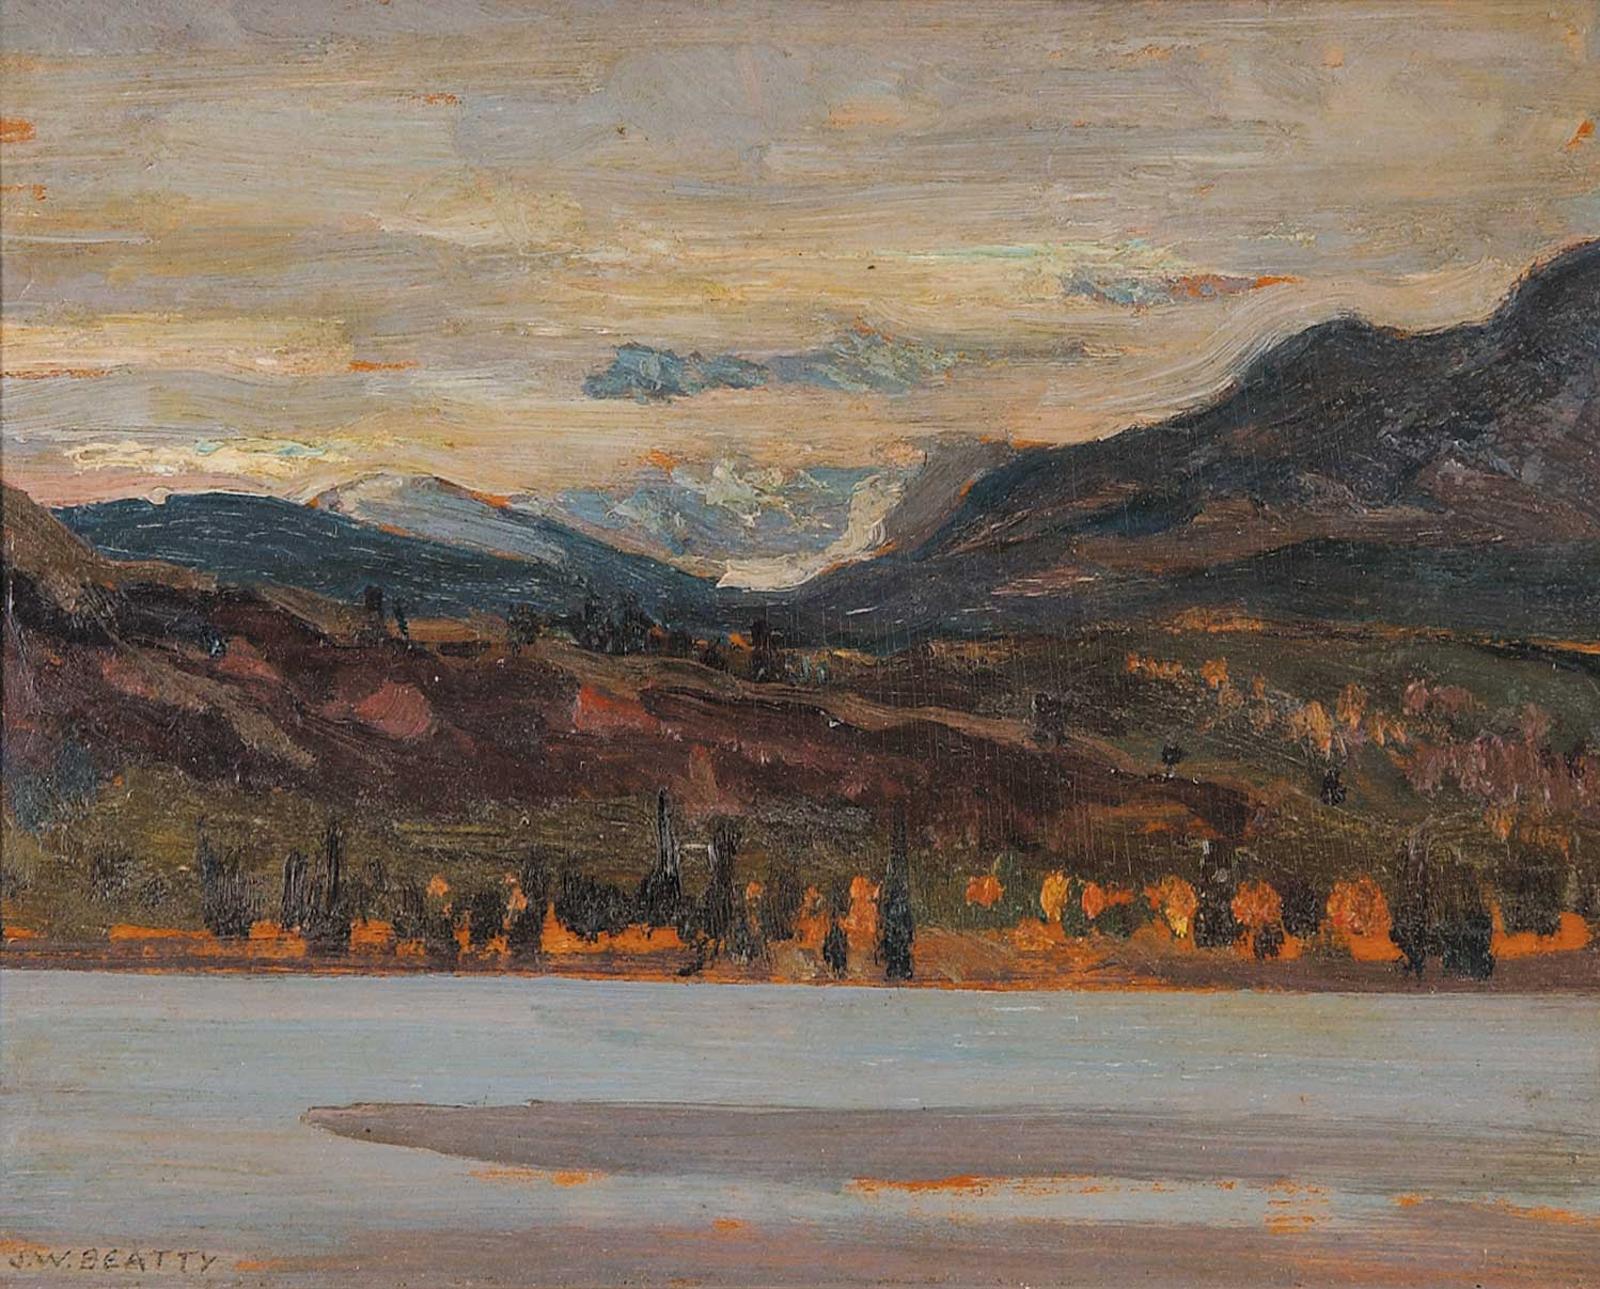 John William (J.W.) Beatty (1869-1941) - Near Jasper, Mt. Edith Cavell